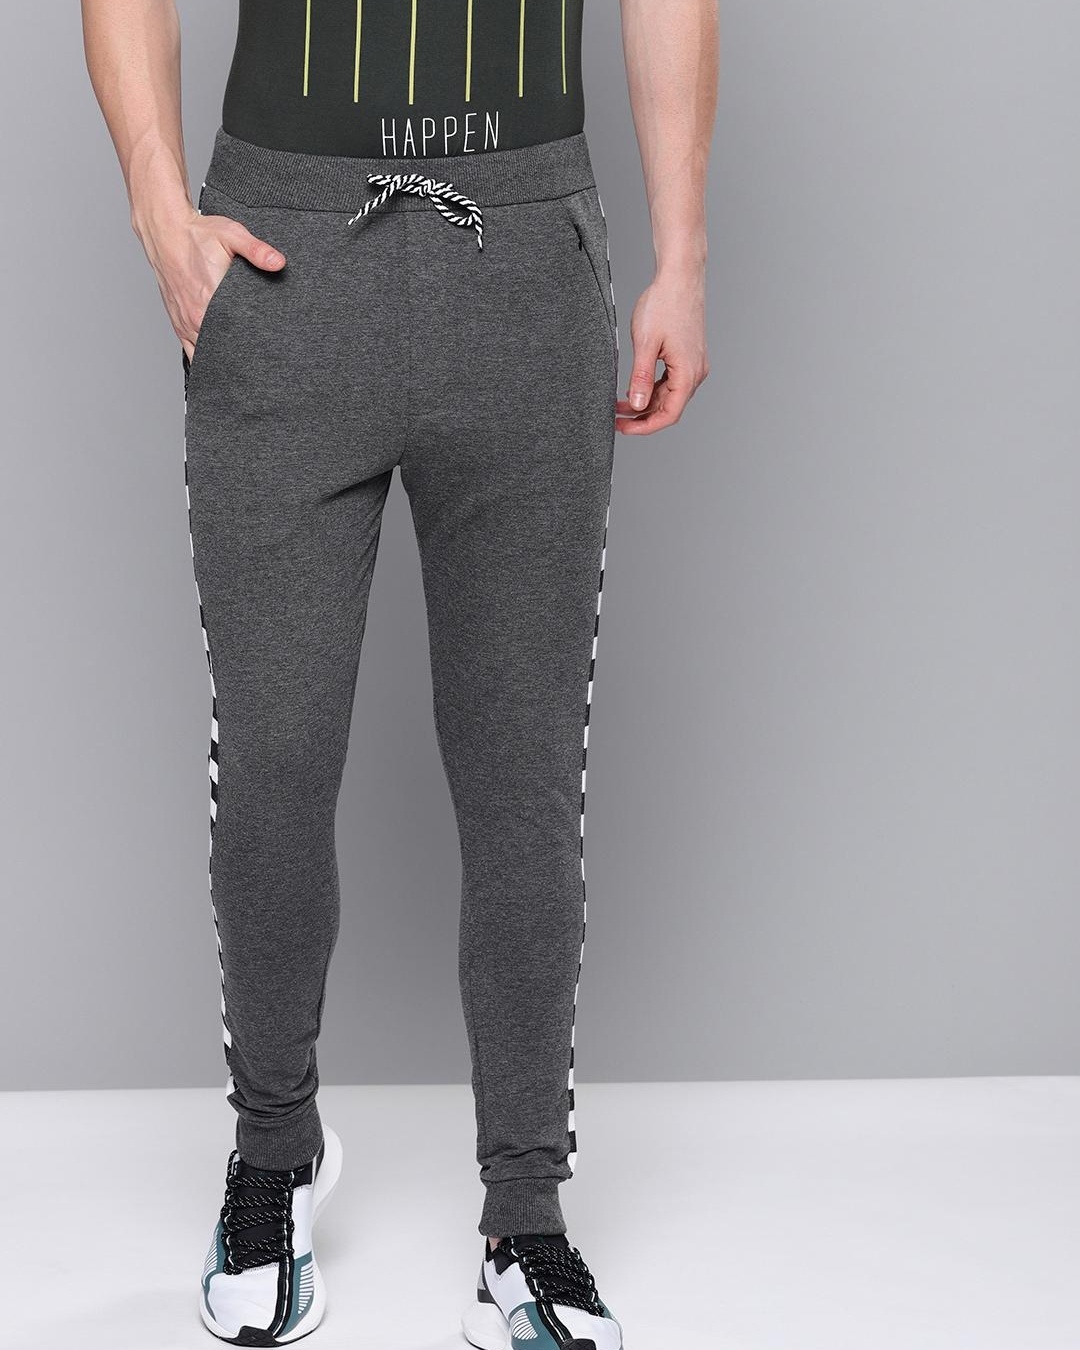 Buy Men's Grey Checked Joggers for Men Grey Online at Bewakoof